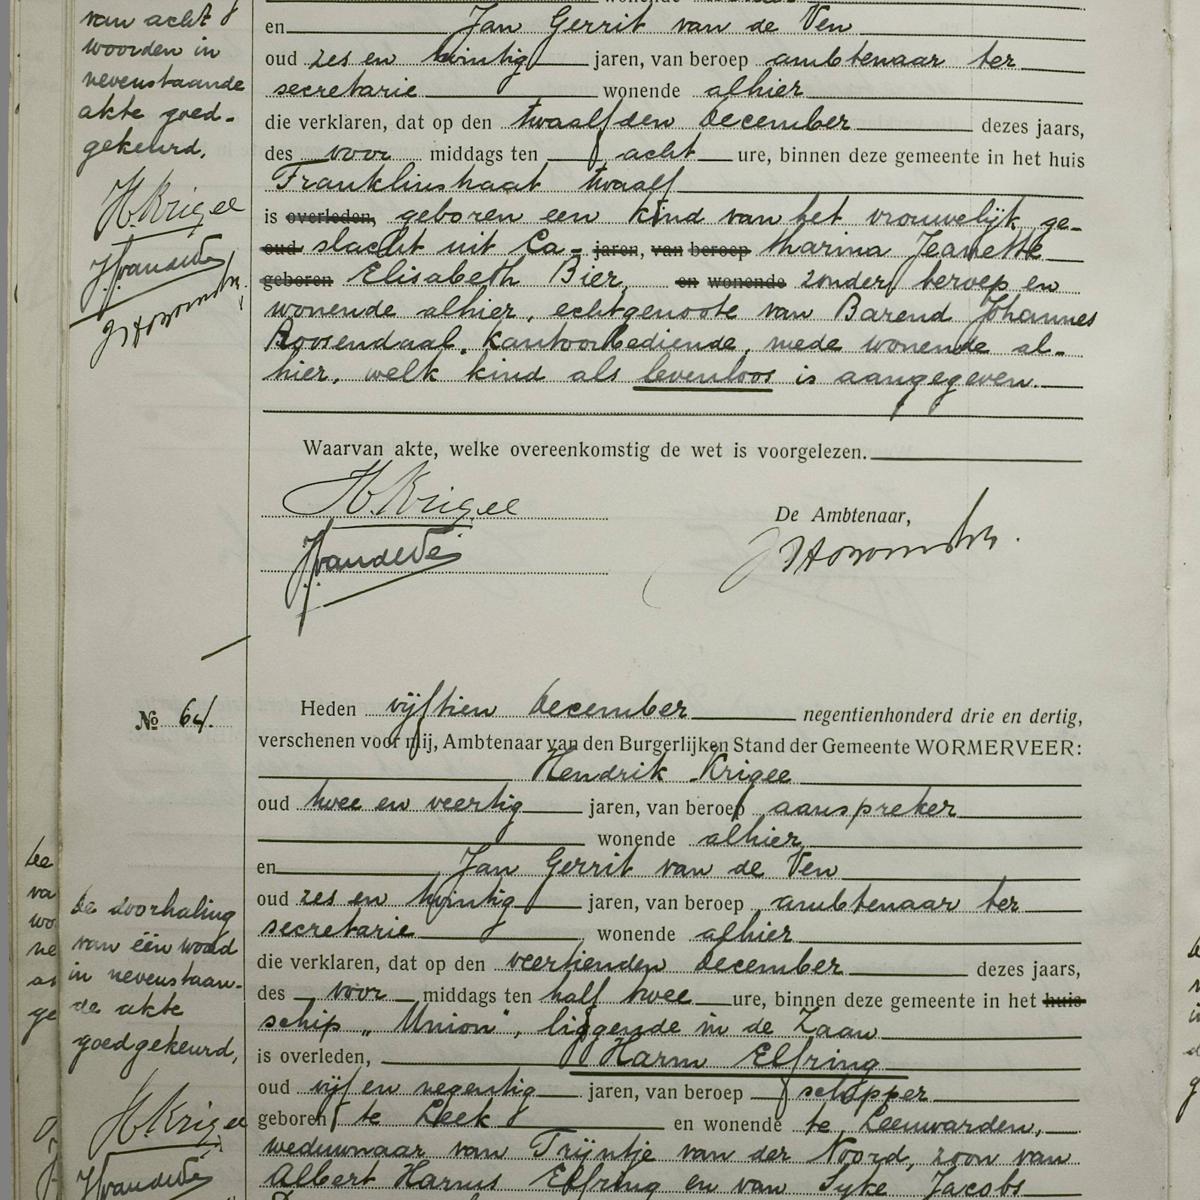 Civil registry of deaths, Wormerveer, 1933, records 63-64